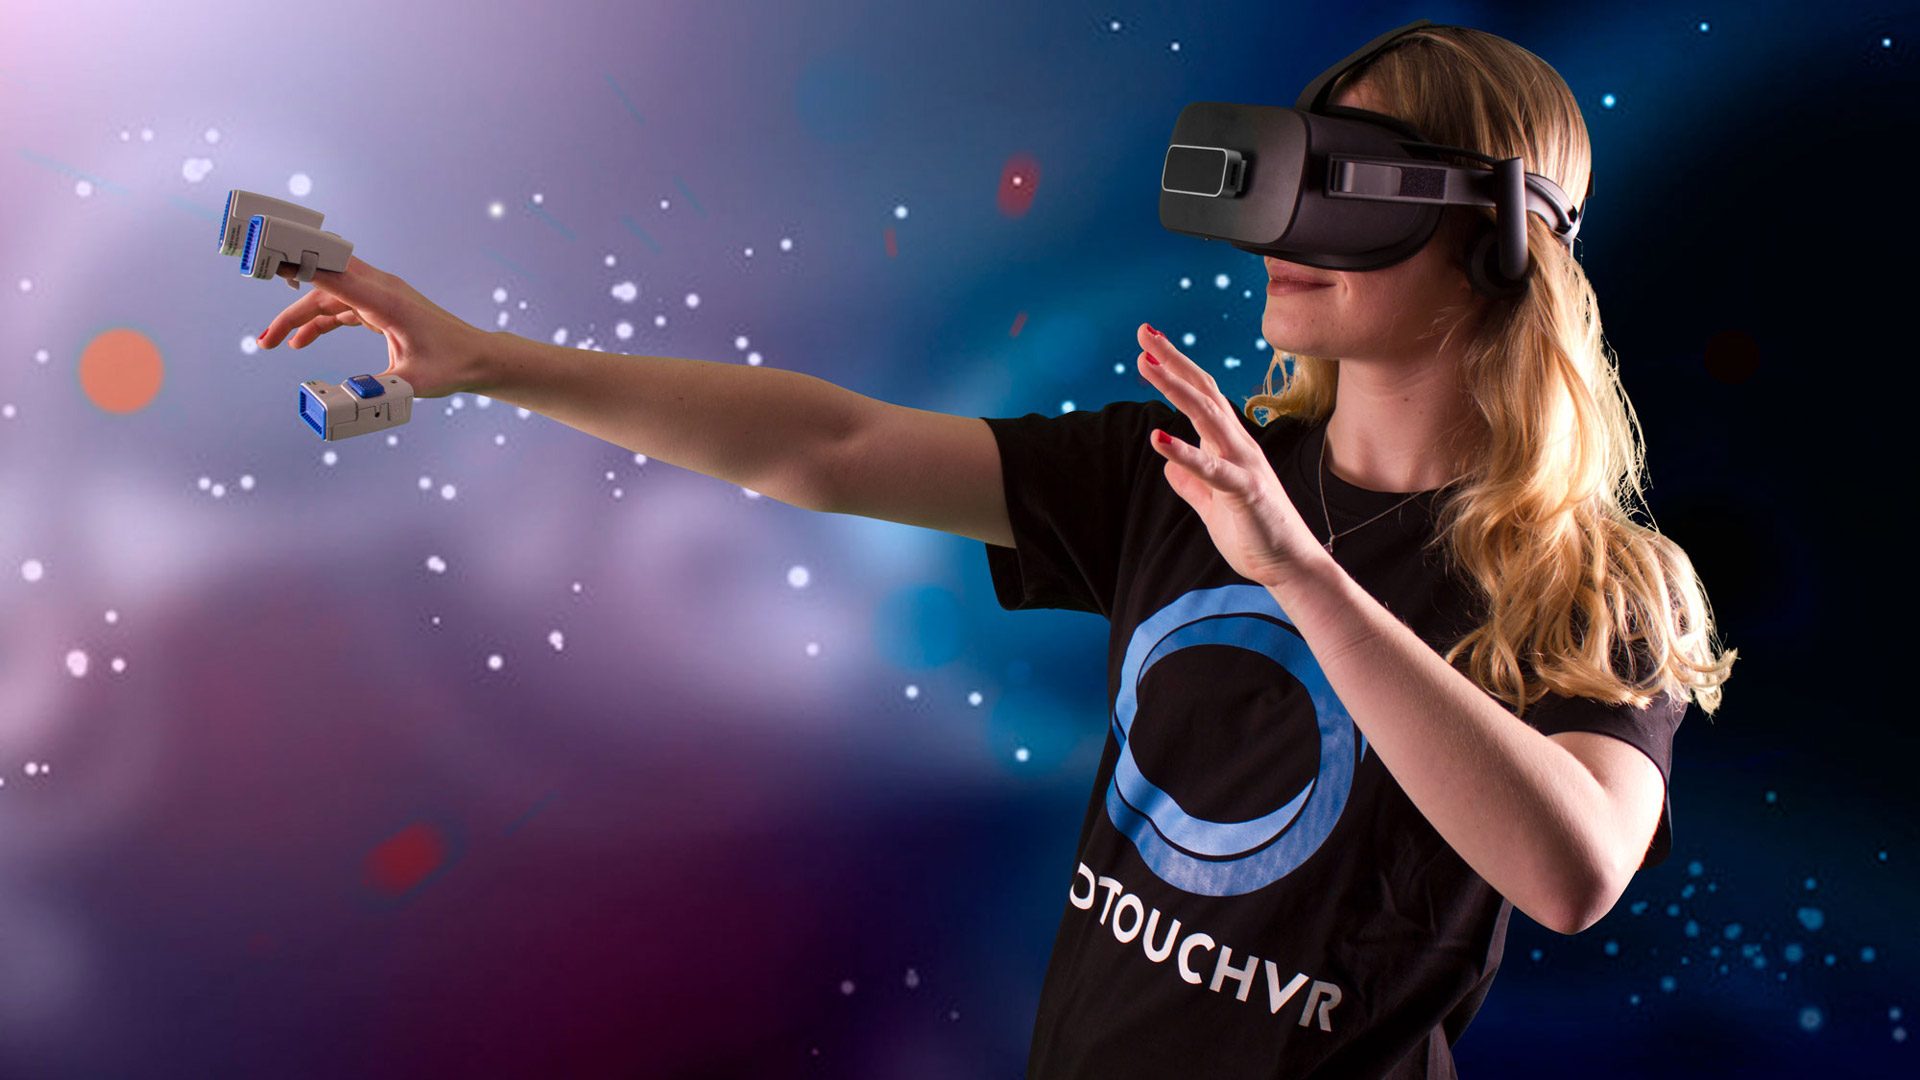 Vr touch. Очки виртуальной реальности. Очки виртуальной реальности крутые. Виртуальная реальность баннер. Виртуальная реальность картинки для рекламы.